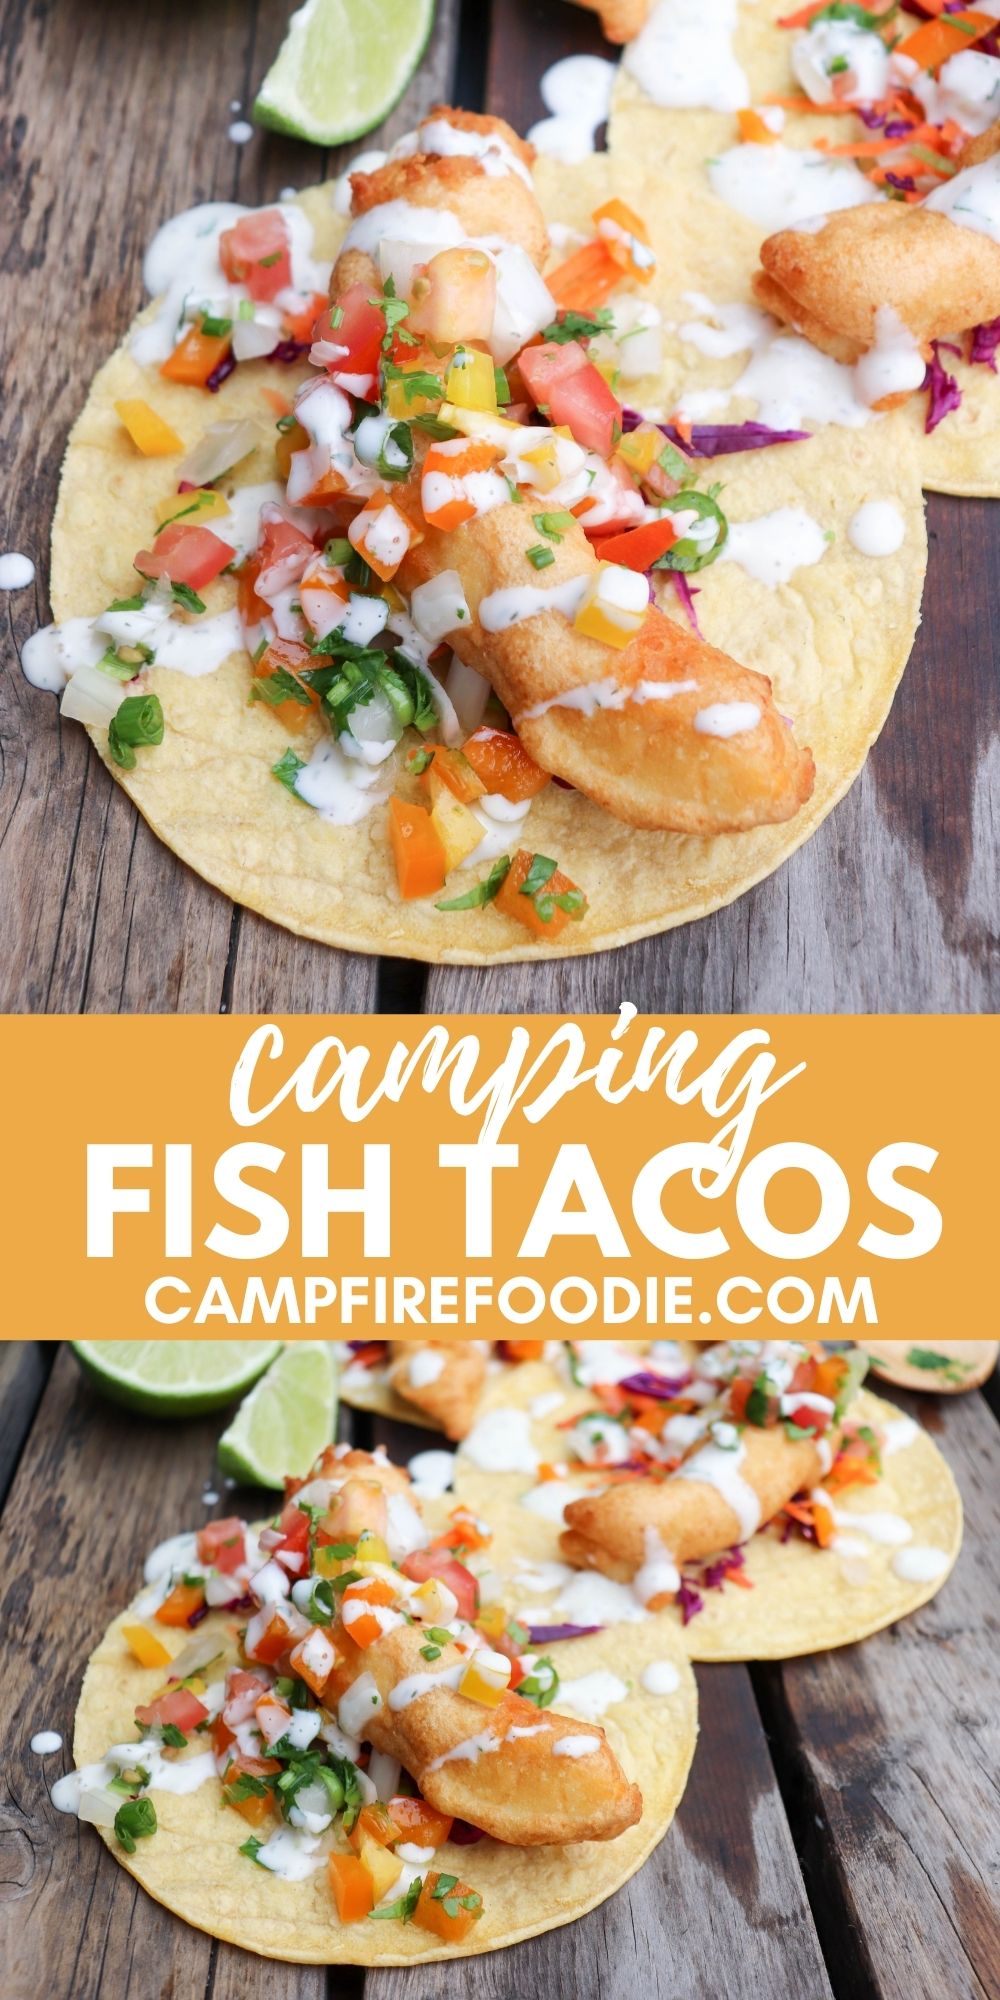 Camping Fish Tacos